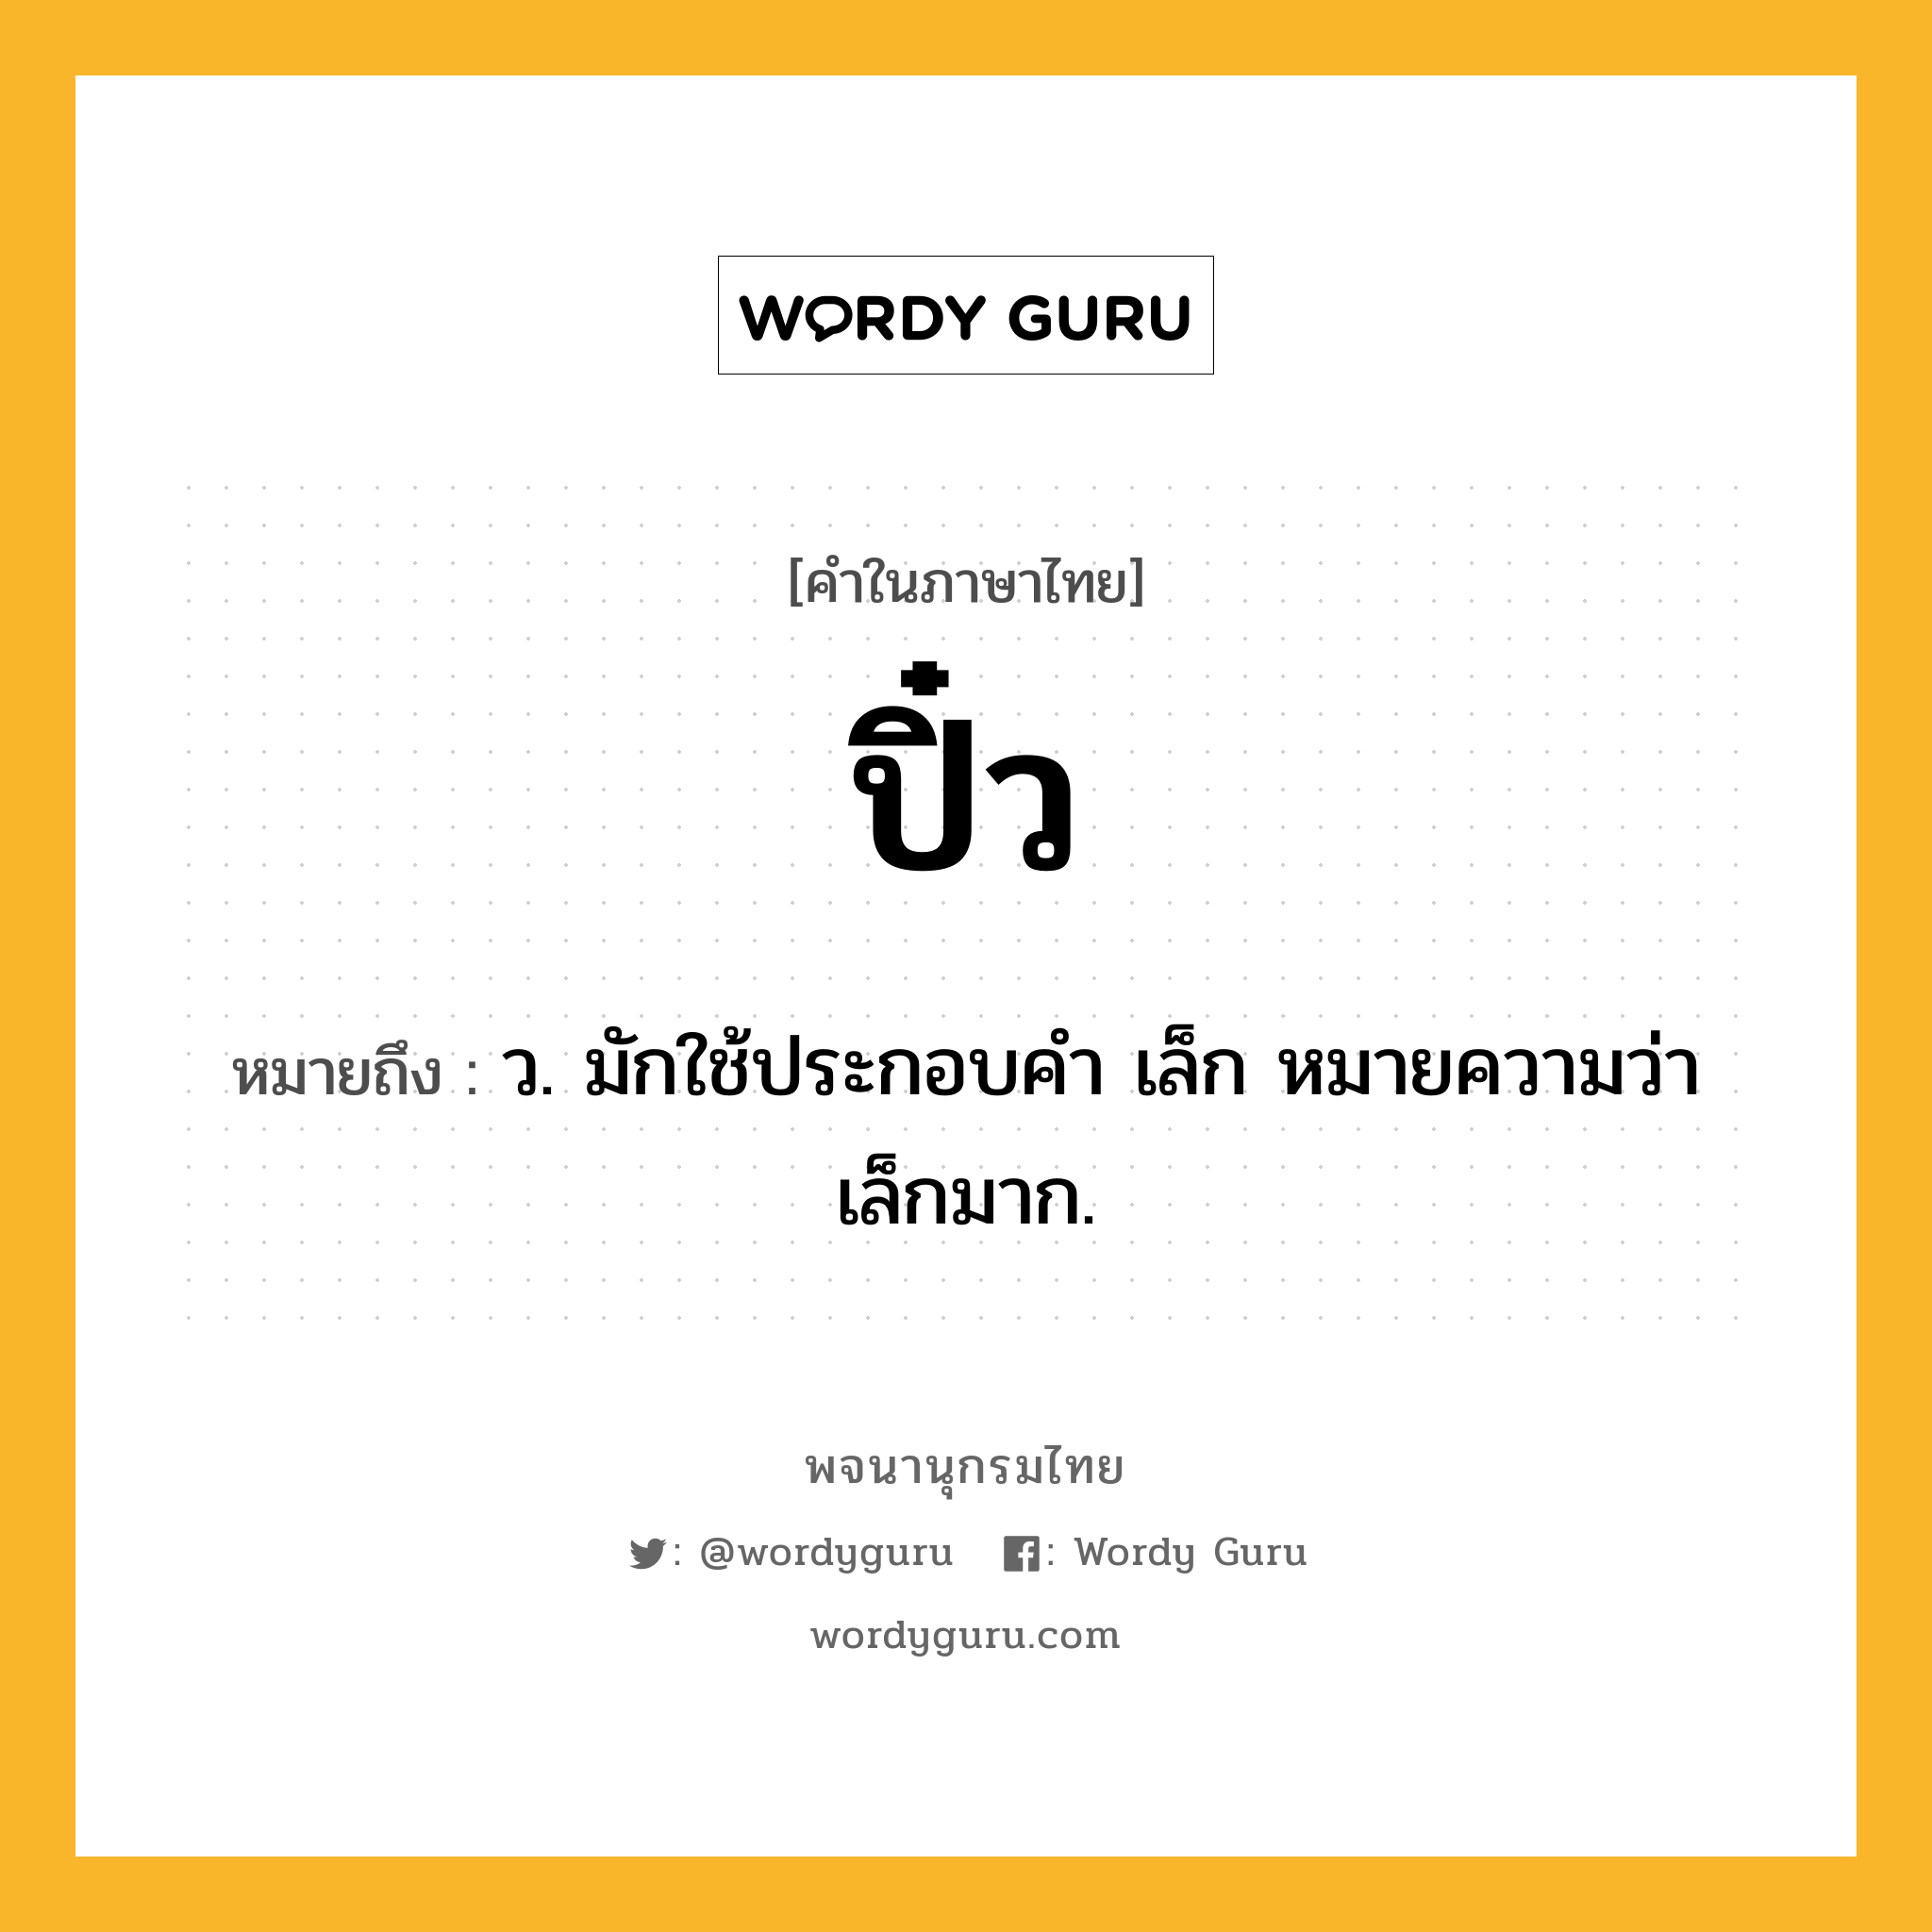 ปิ๋ว ความหมาย หมายถึงอะไร?, คำในภาษาไทย ปิ๋ว หมายถึง ว. มักใช้ประกอบคํา เล็ก หมายความว่า เล็กมาก.